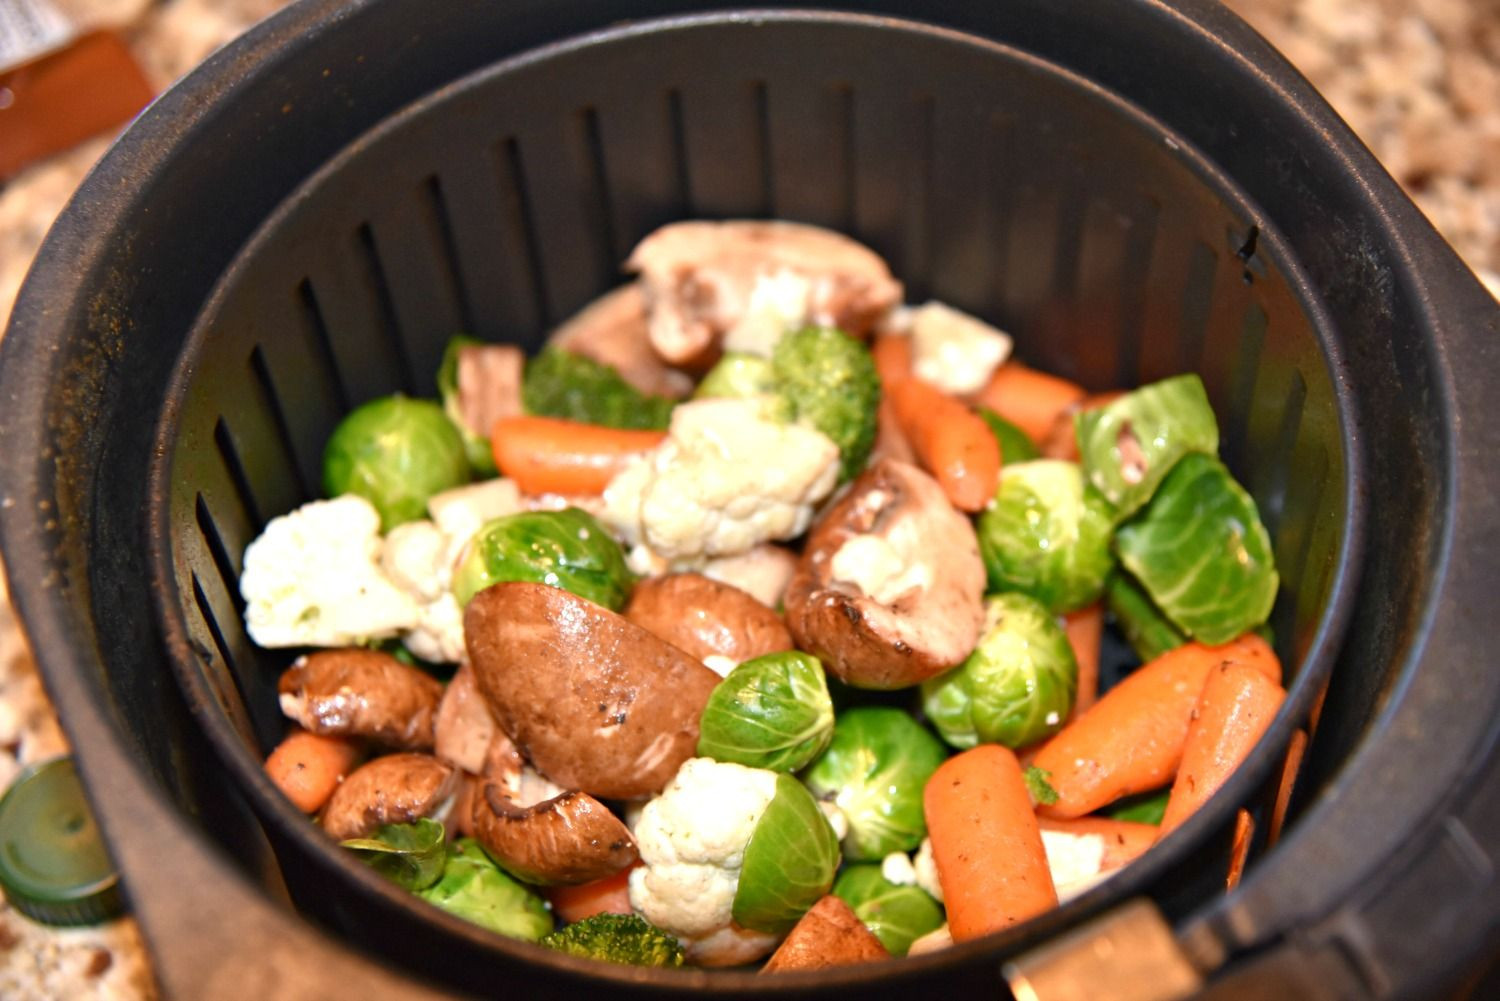 Air Fryer Recipes Vegetarian Inspirational Air Fryer Basket